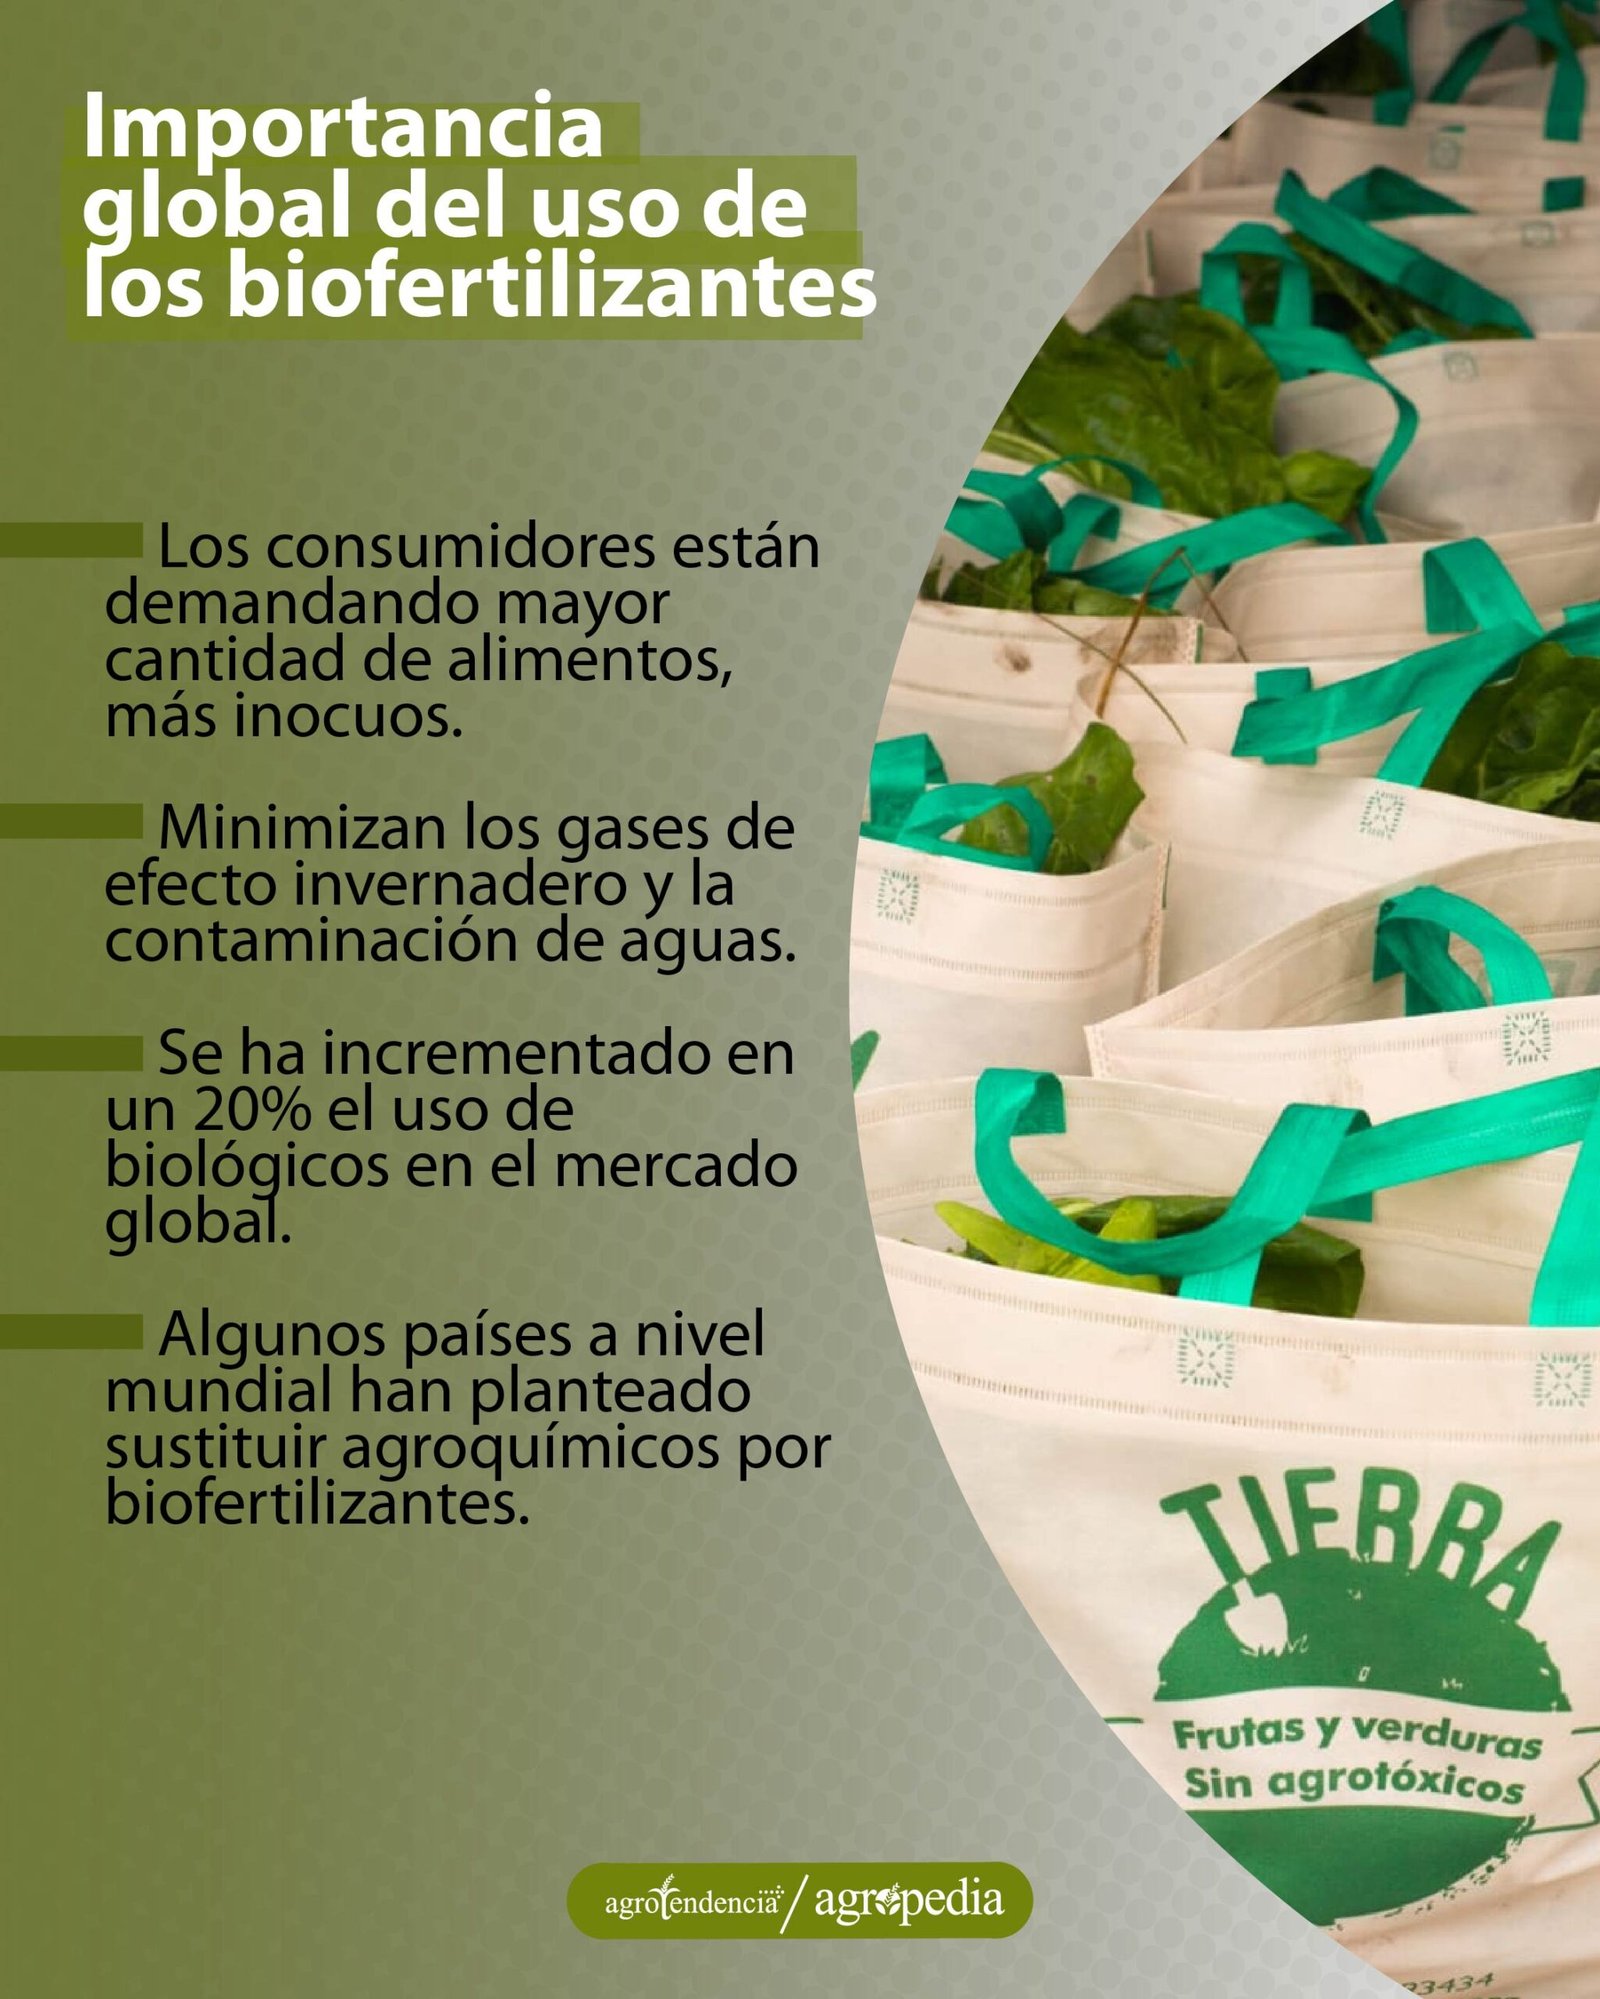 bolsas con plantas biofertilizadas